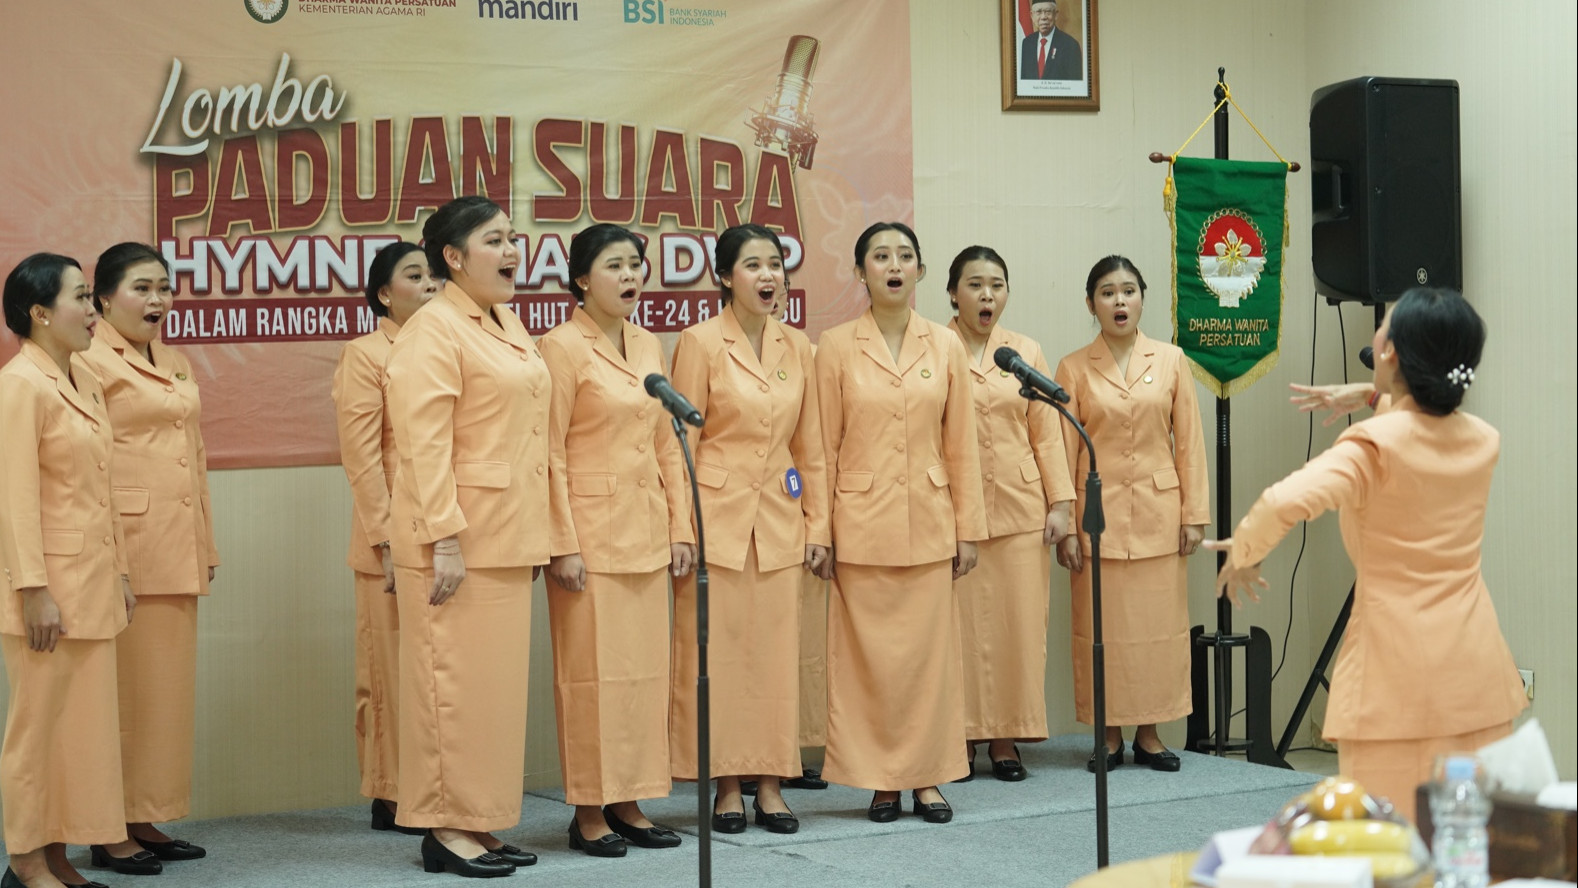 Lomba Paduan Suara Mars dan Hymne Dharma Wanita Persatuan (Foto: Ahlul)